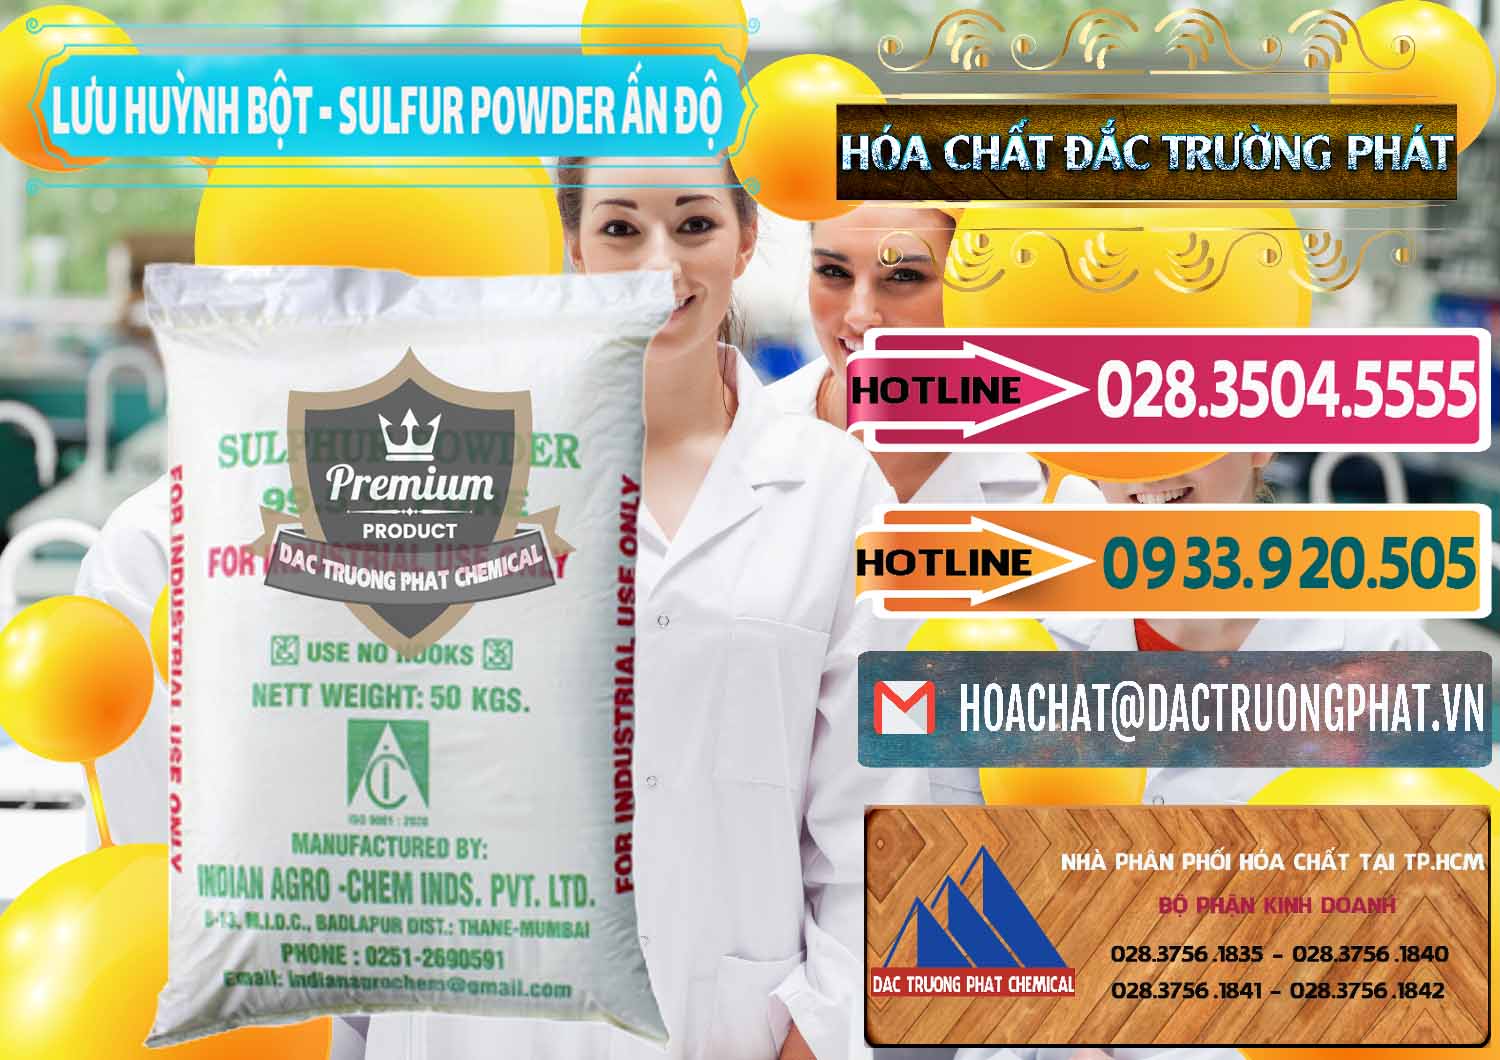 Công ty bán - cung cấp Lưu huỳnh Bột - Sulfur Powder Ấn Độ India - 0347 - Nơi chuyên kinh doanh & cung cấp hóa chất tại TP.HCM - dactruongphat.vn